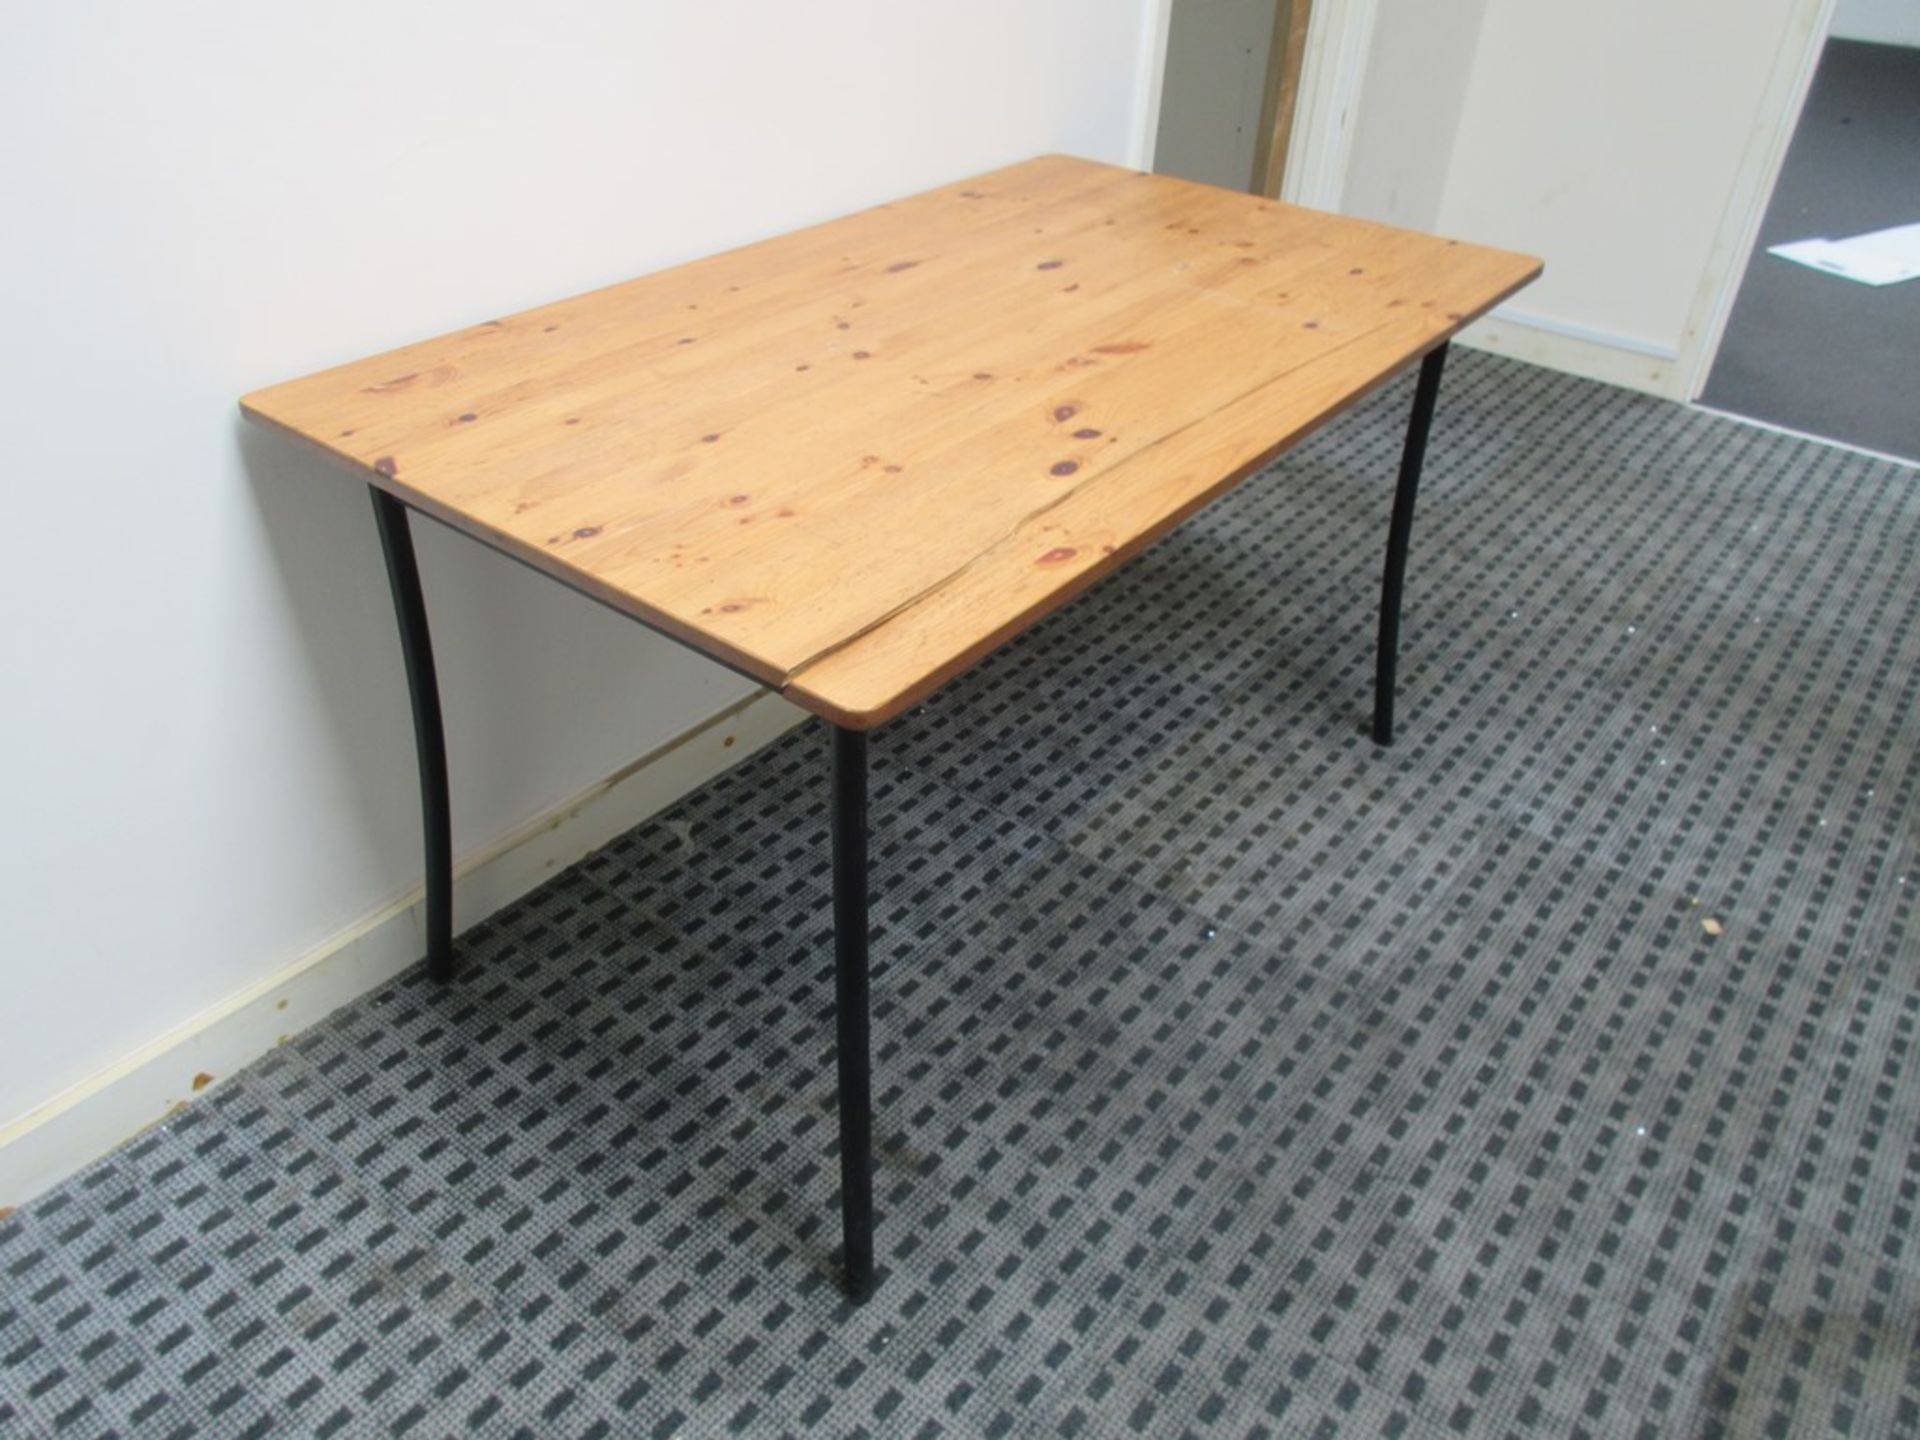 Light wood effect Single pedestal desk with 2 straight desks - Image 3 of 5